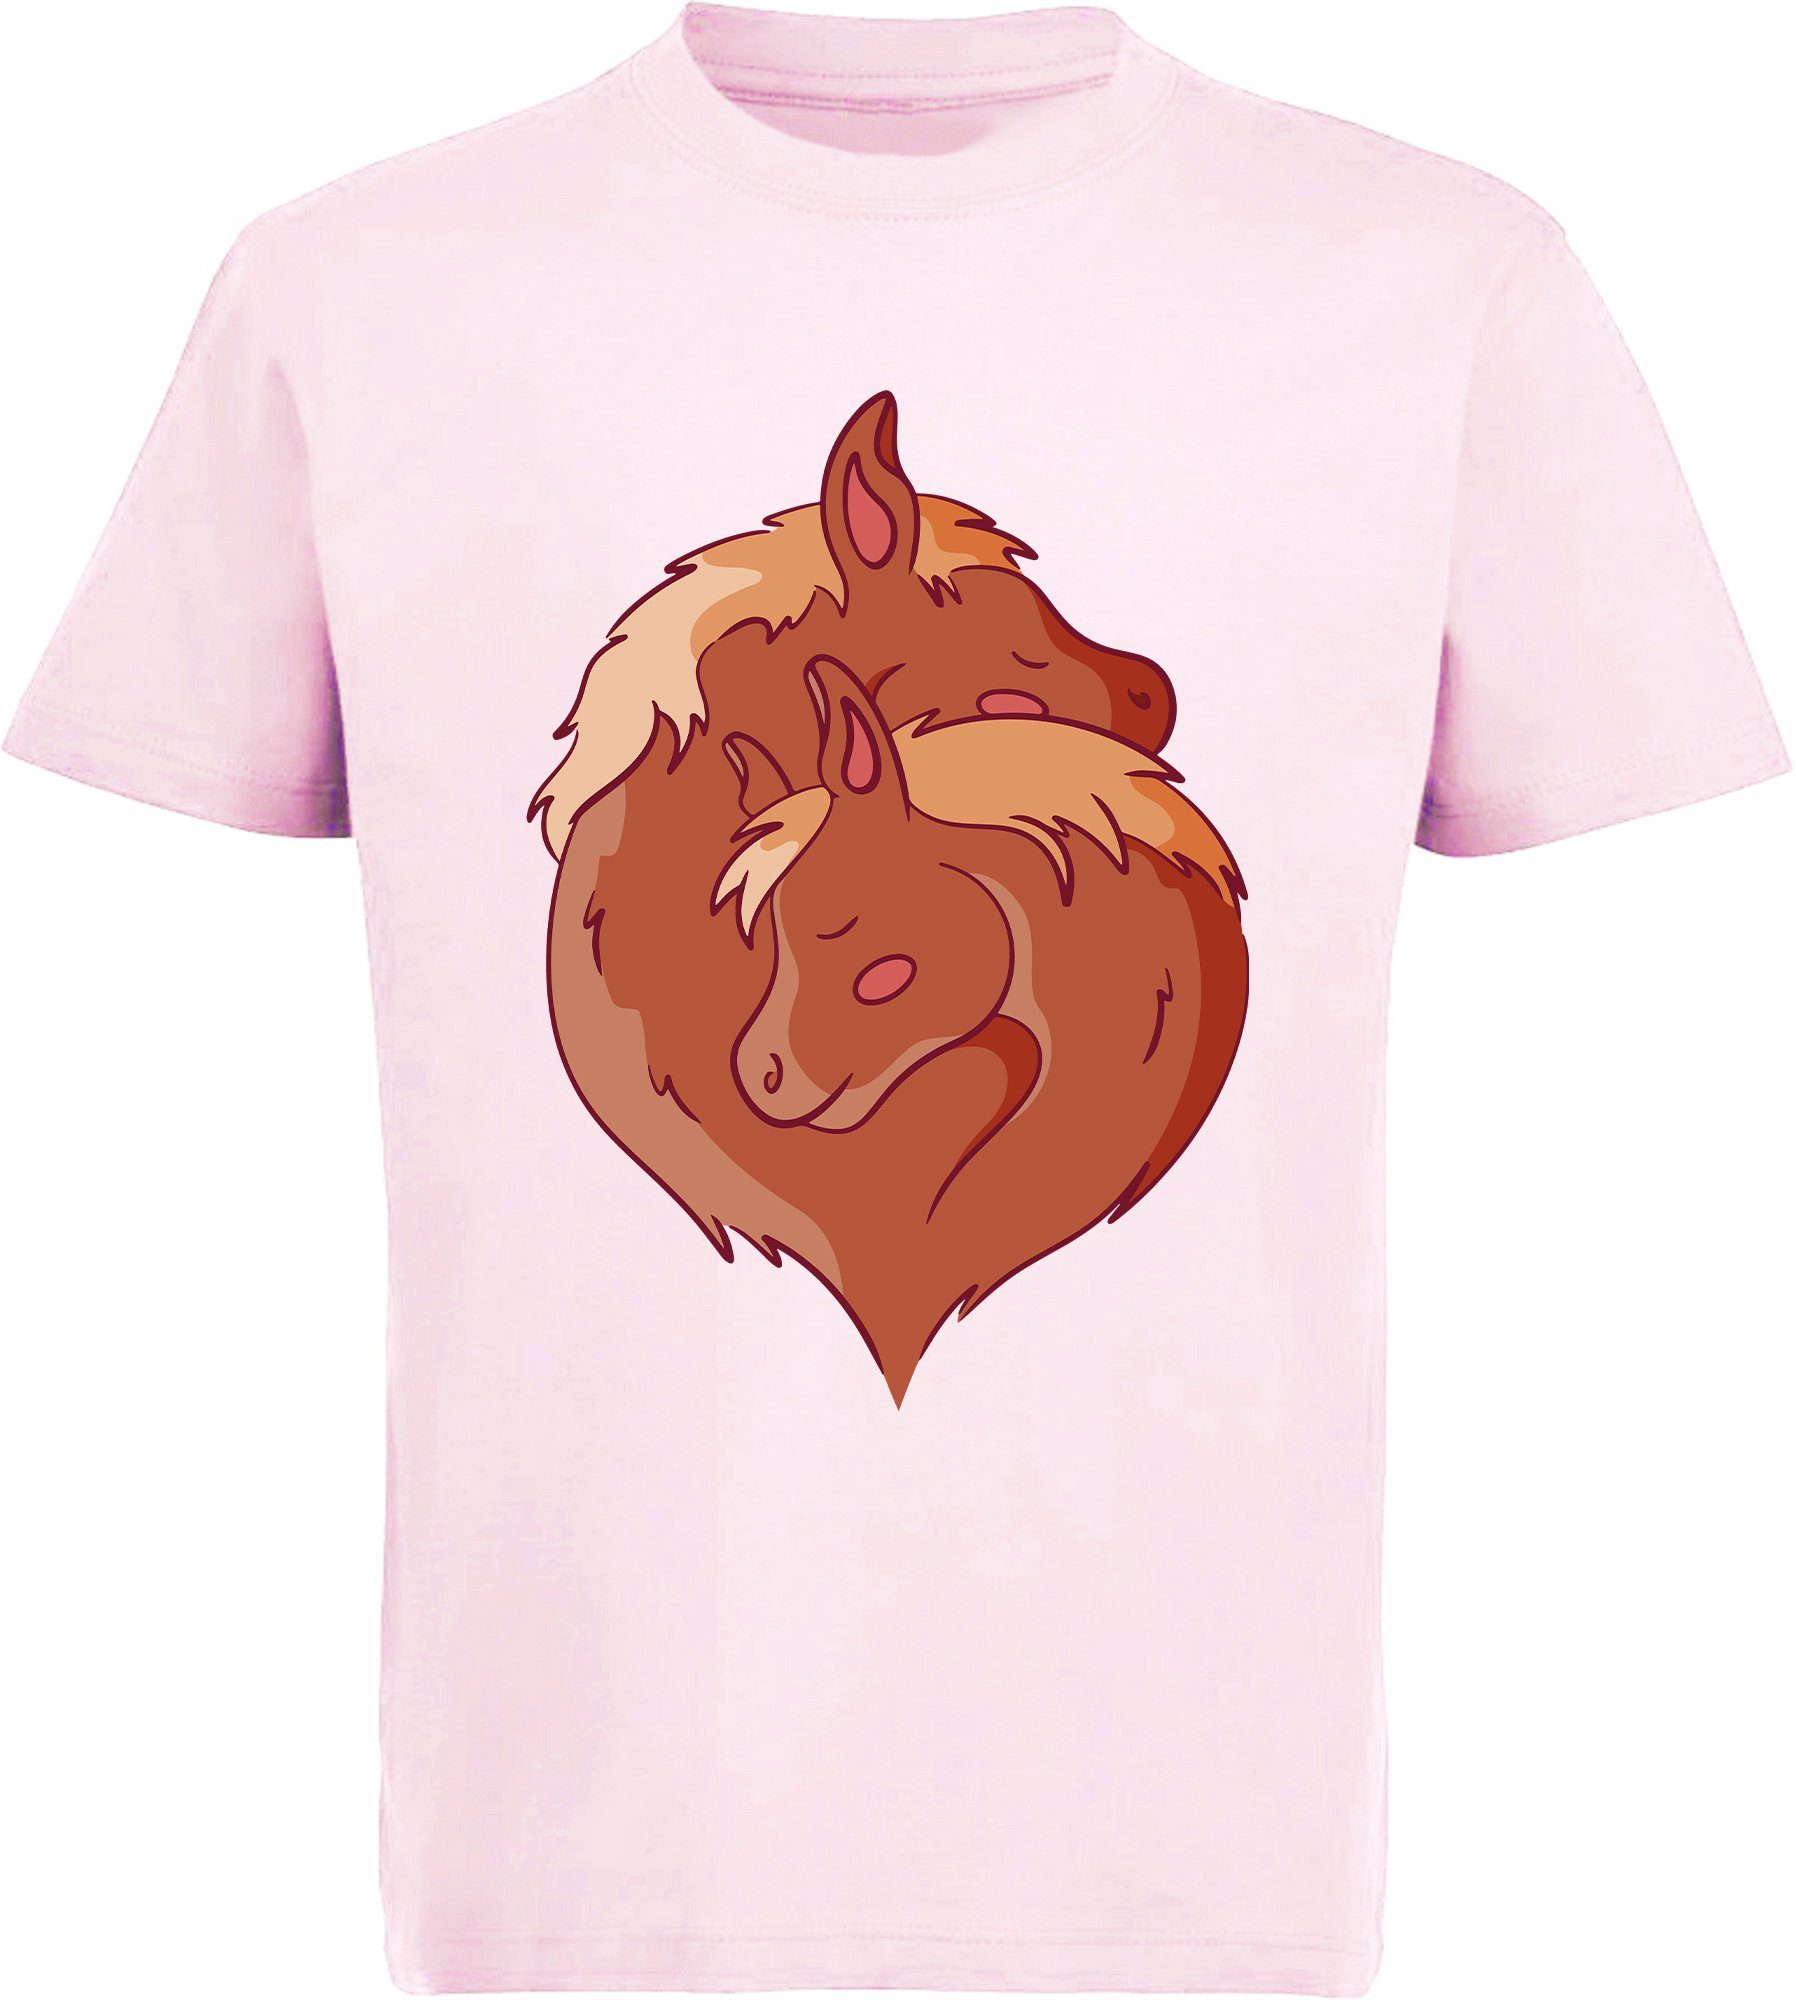 MyDesign24 Print-Shirt bedrucktes Mädchen T-Shirt im Yin zwei Yang rosa kuschelnde Aufdruck, mit Baumwollshirt Pferde Stil i152